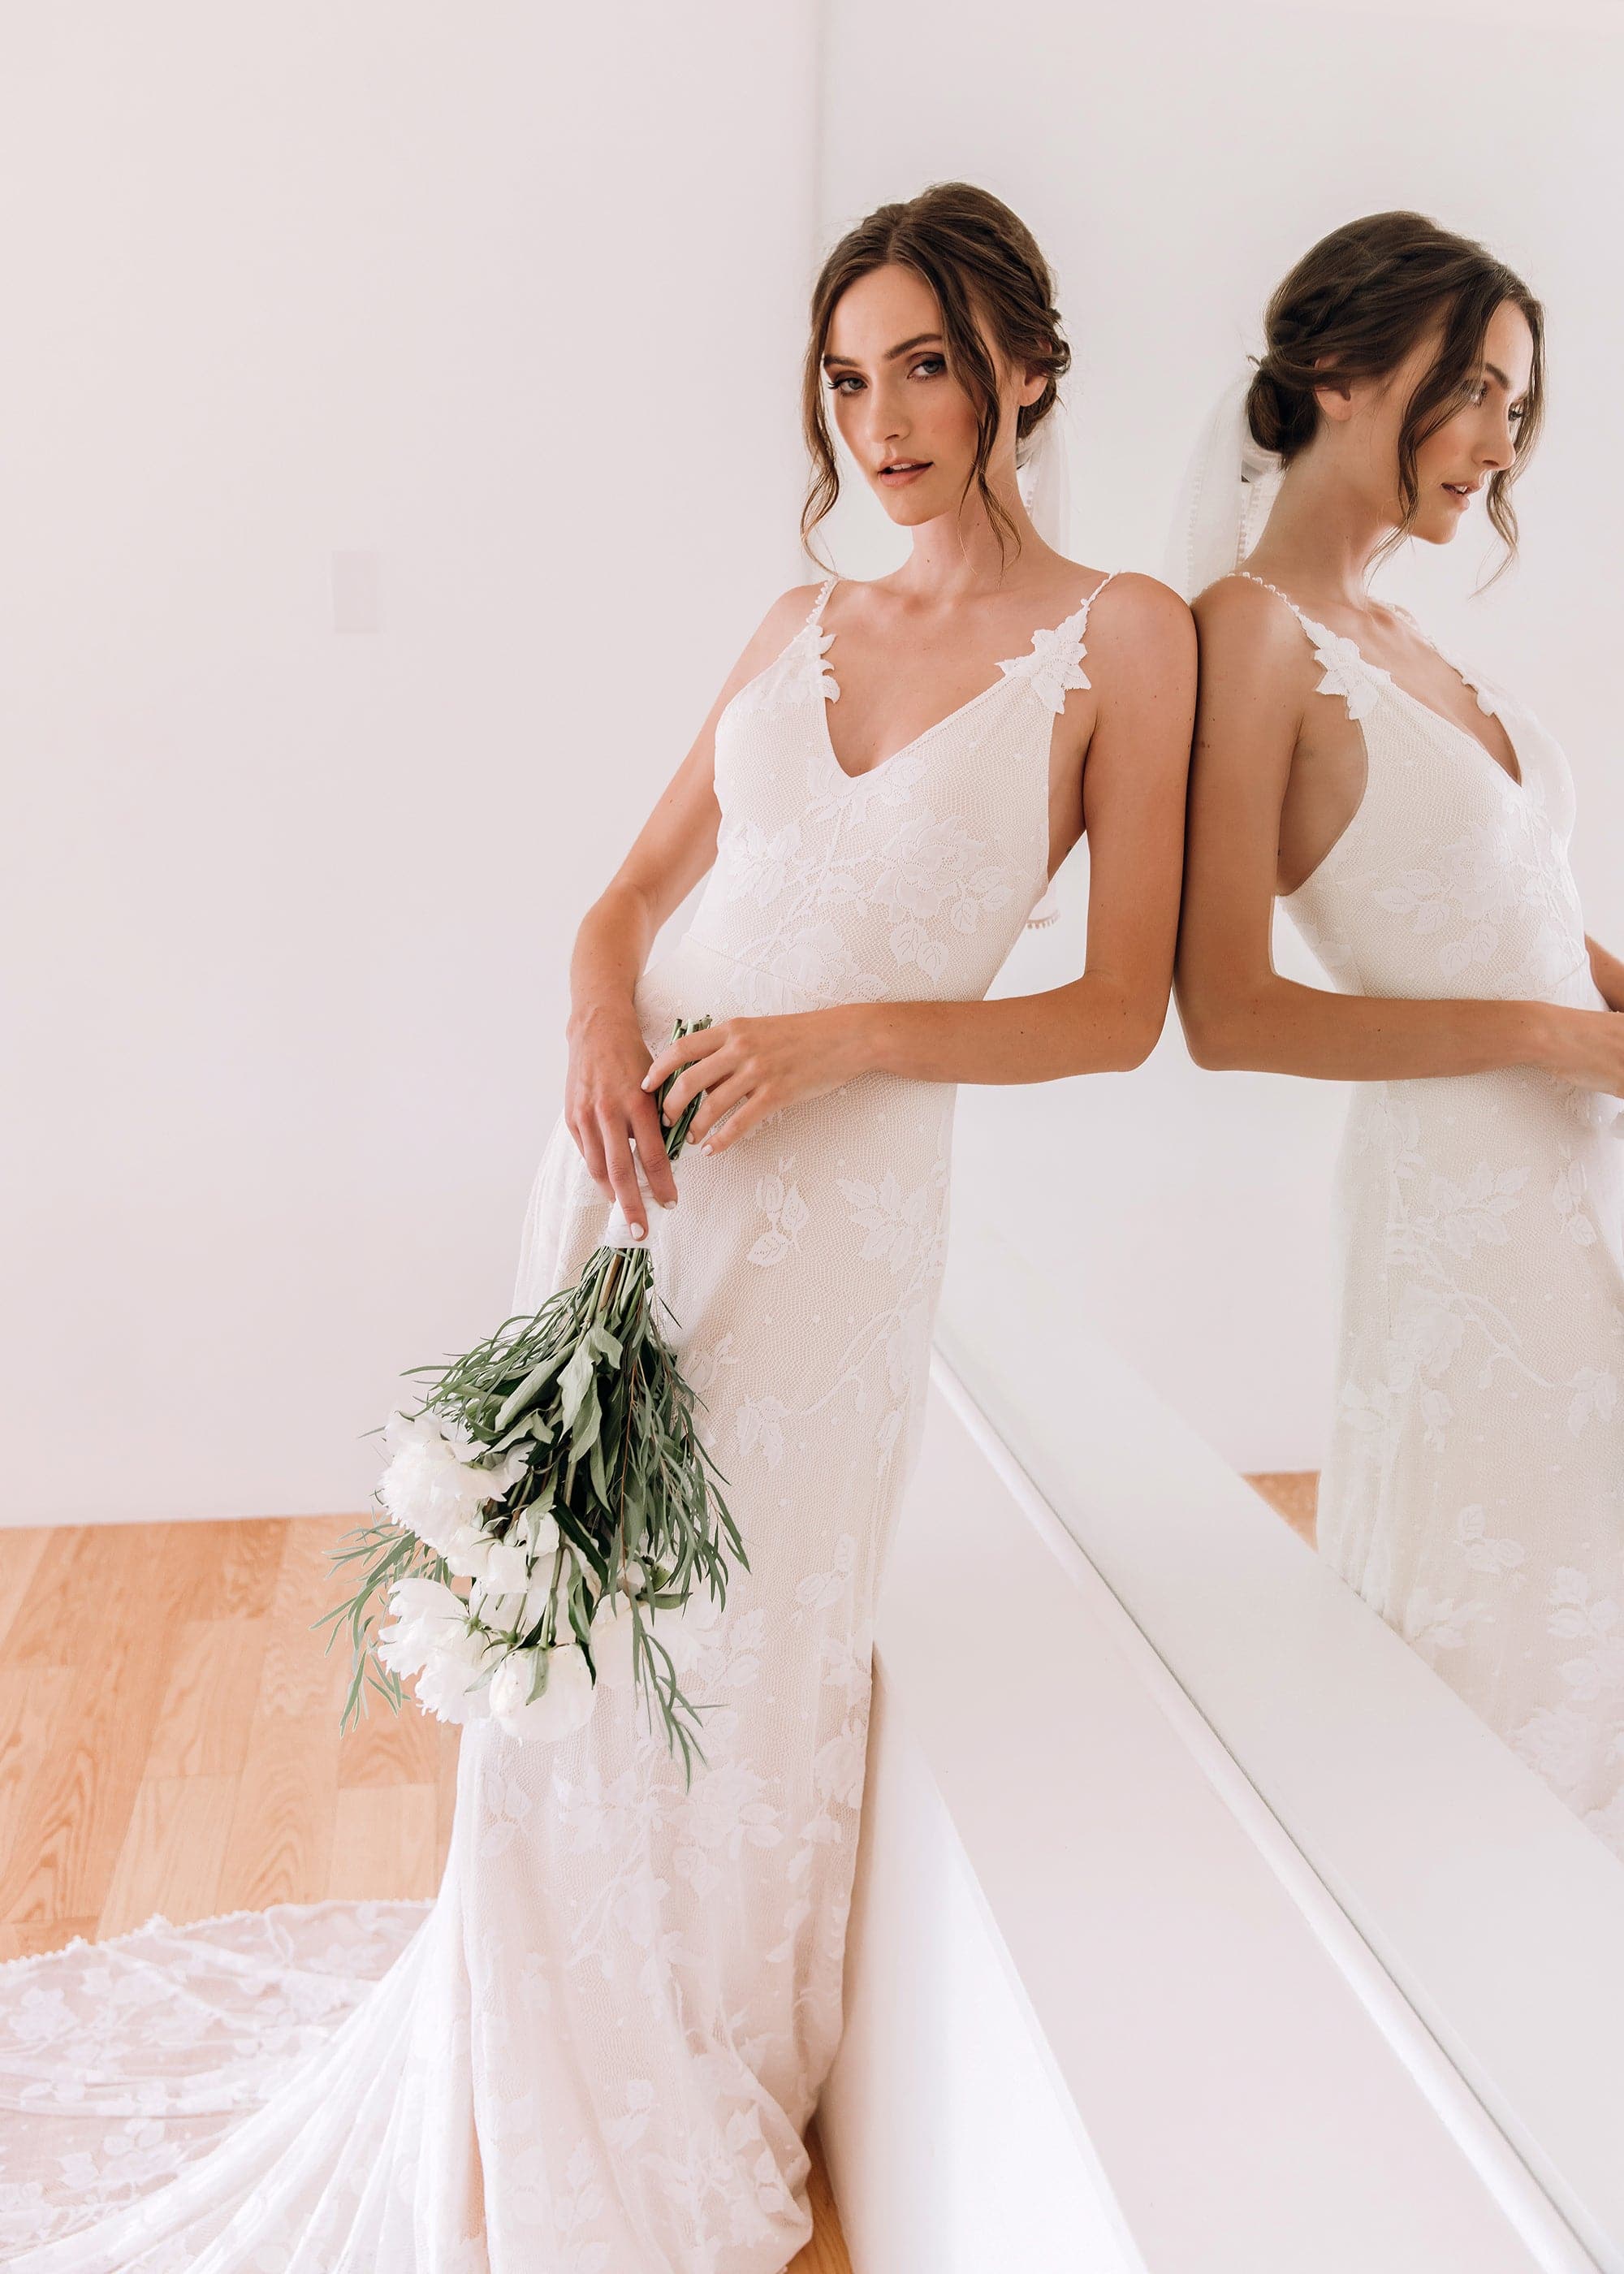 Elegant V Neck Chiffon Wedding Bride Bathrobe With Appliqued Lace